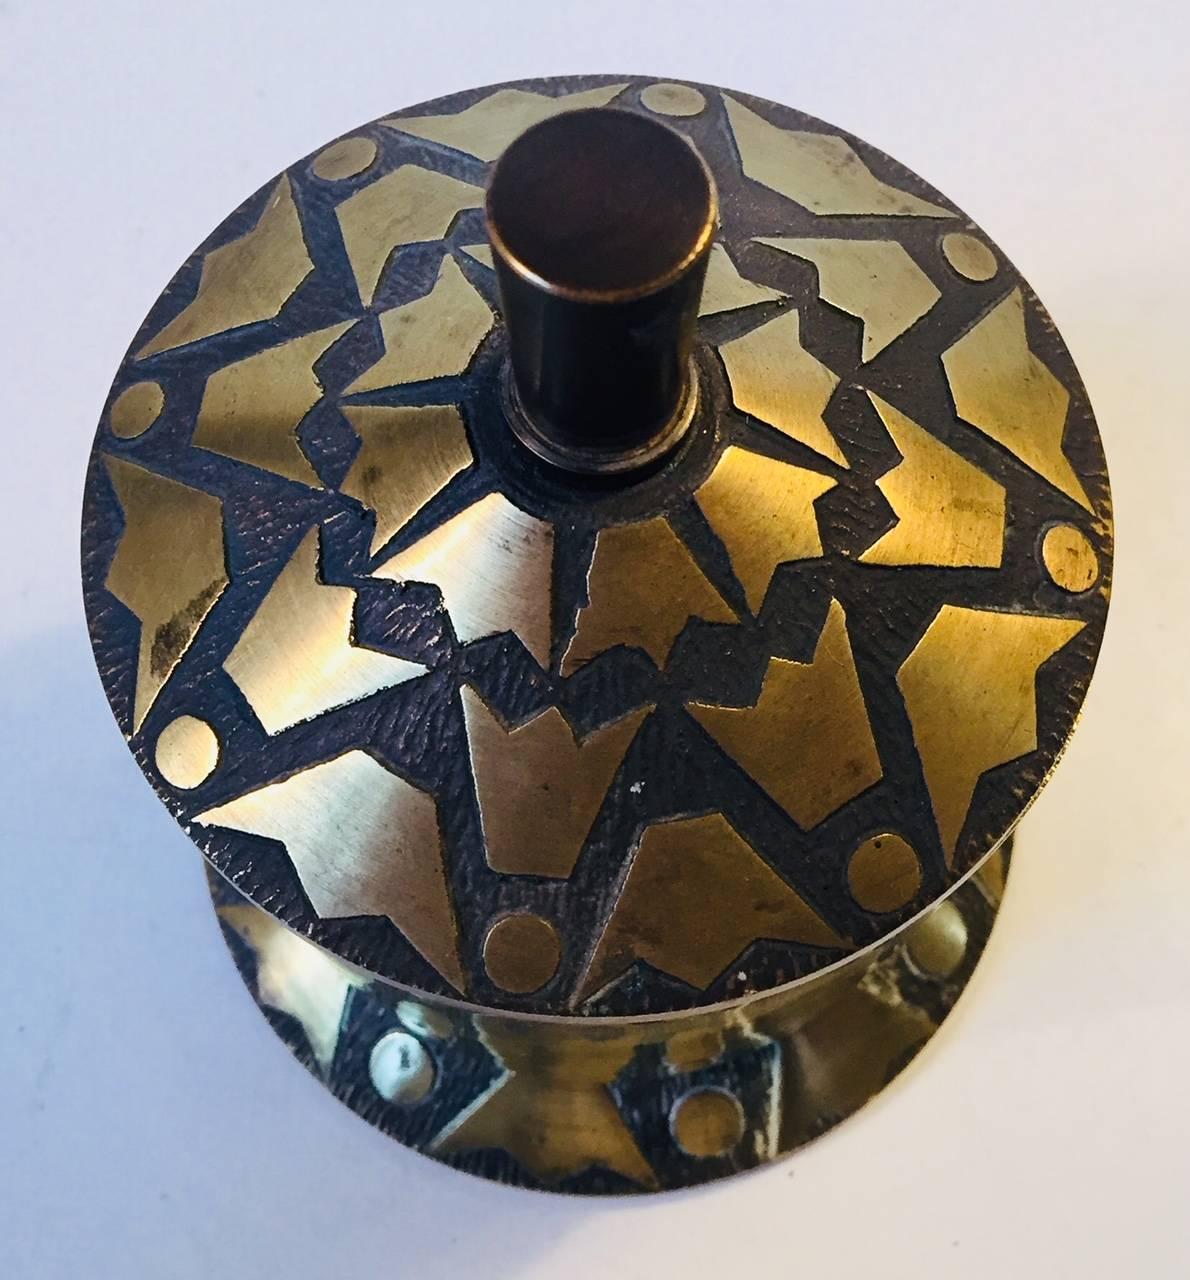 Bronzetopf mit Deckel, Schmuckstück oder Zigarettenbehälter, verziert mit Kronenmotiven. Hergestellt und entworfen von Nordisk Malm in Dänemark in den 1930er Jahren in einem Stil, der an Tinos und Argentor erinnert. Das Stück hat eine flache Gravur